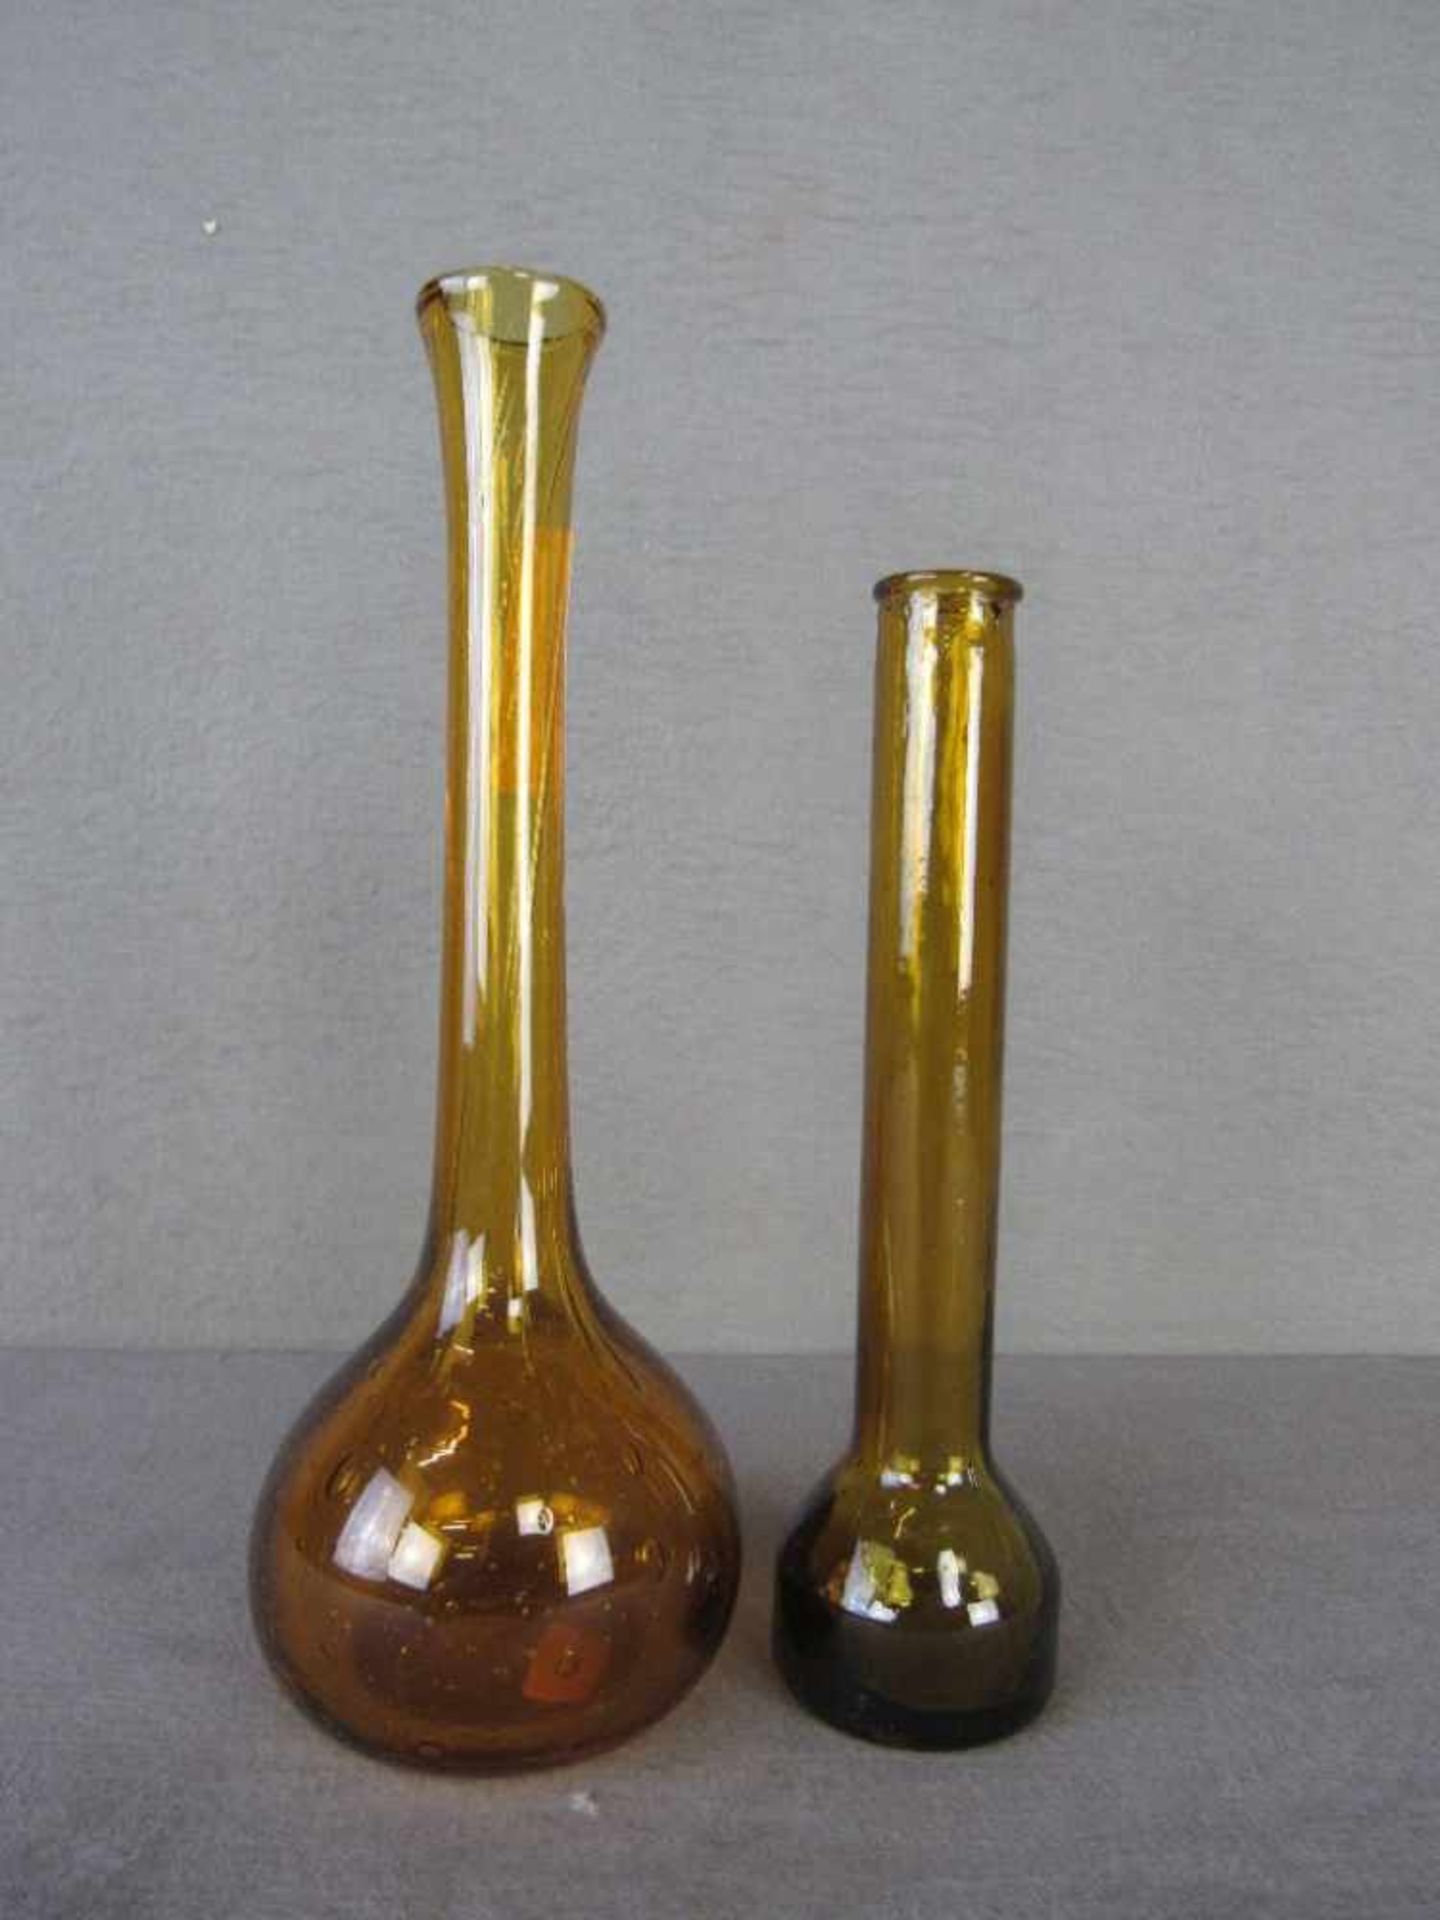 Zwei Designervasen honigfarben 21&26cm- - -20.00 % buyer's premium on the hammer price19.00 % VAT on